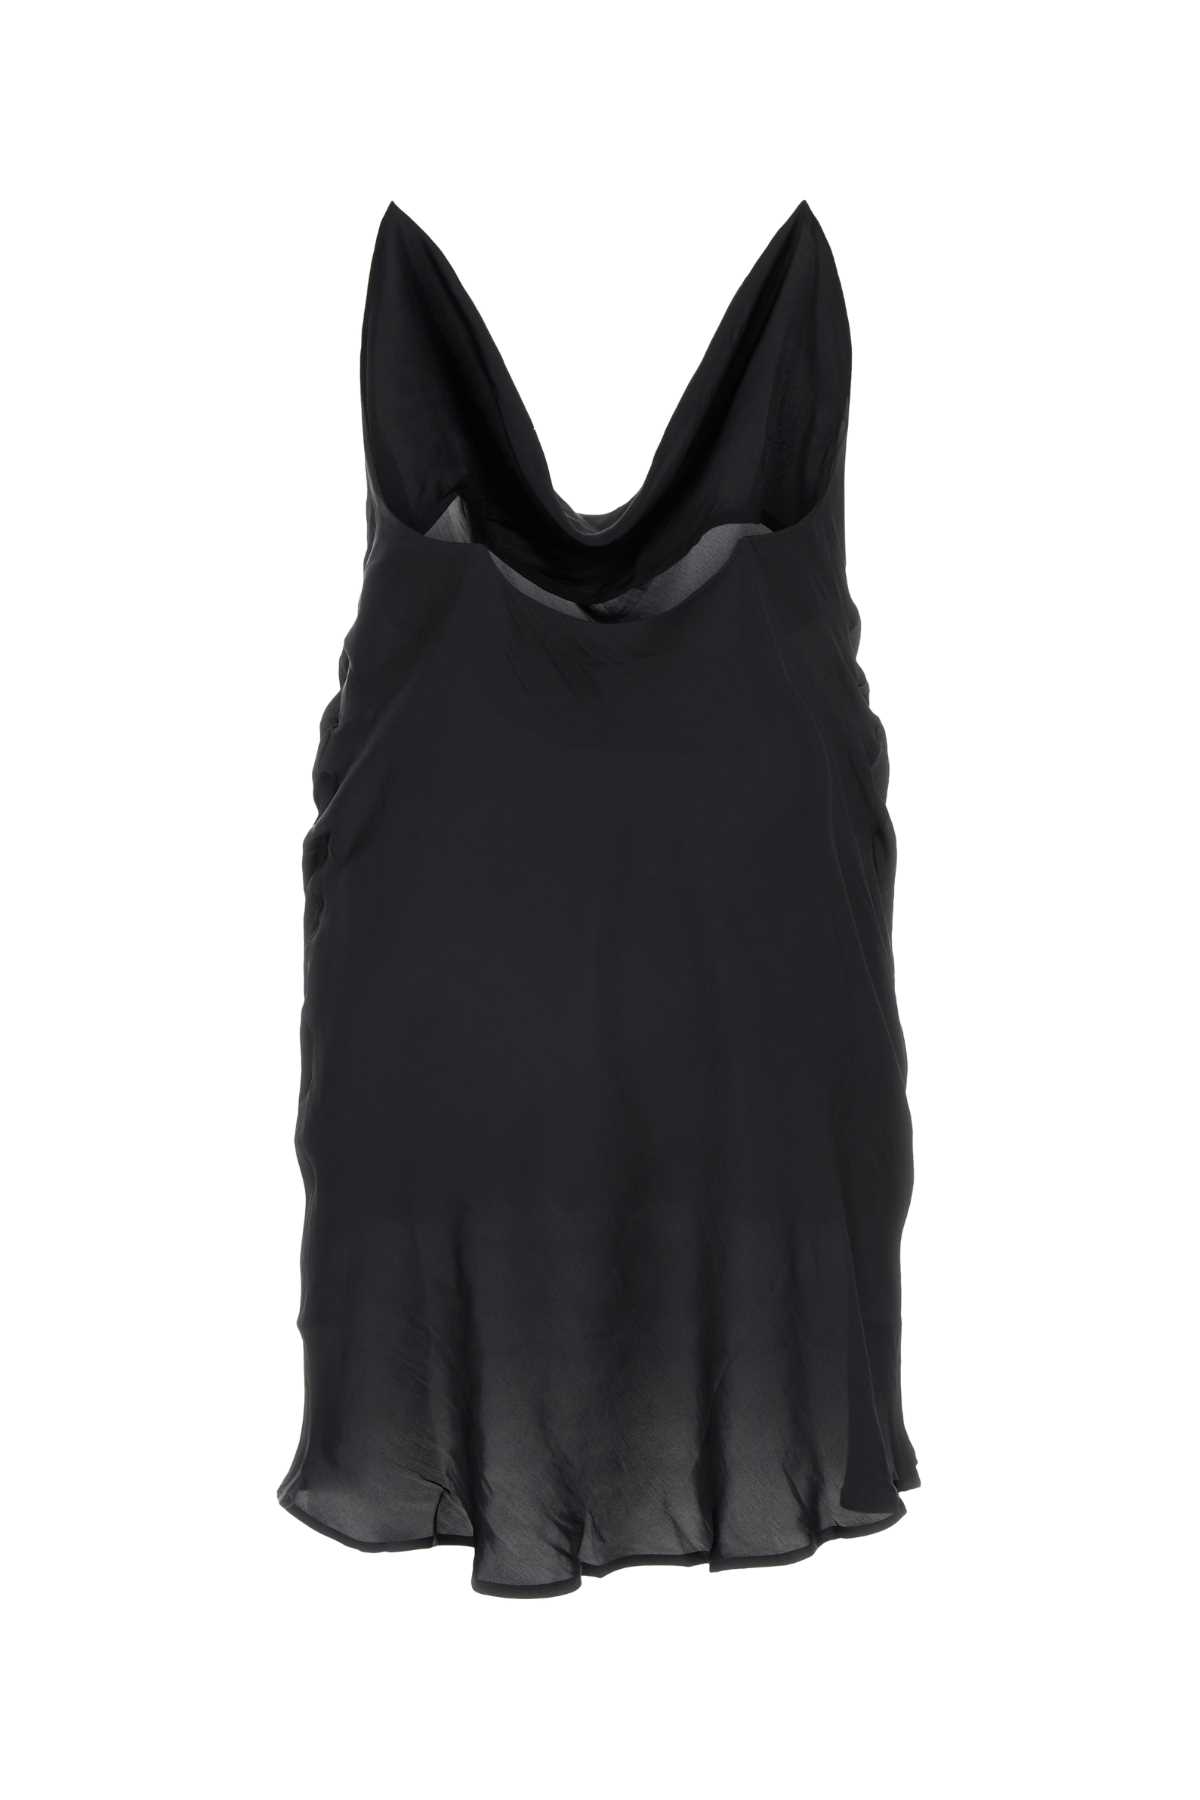 Y/project Black Satin Mini Dress